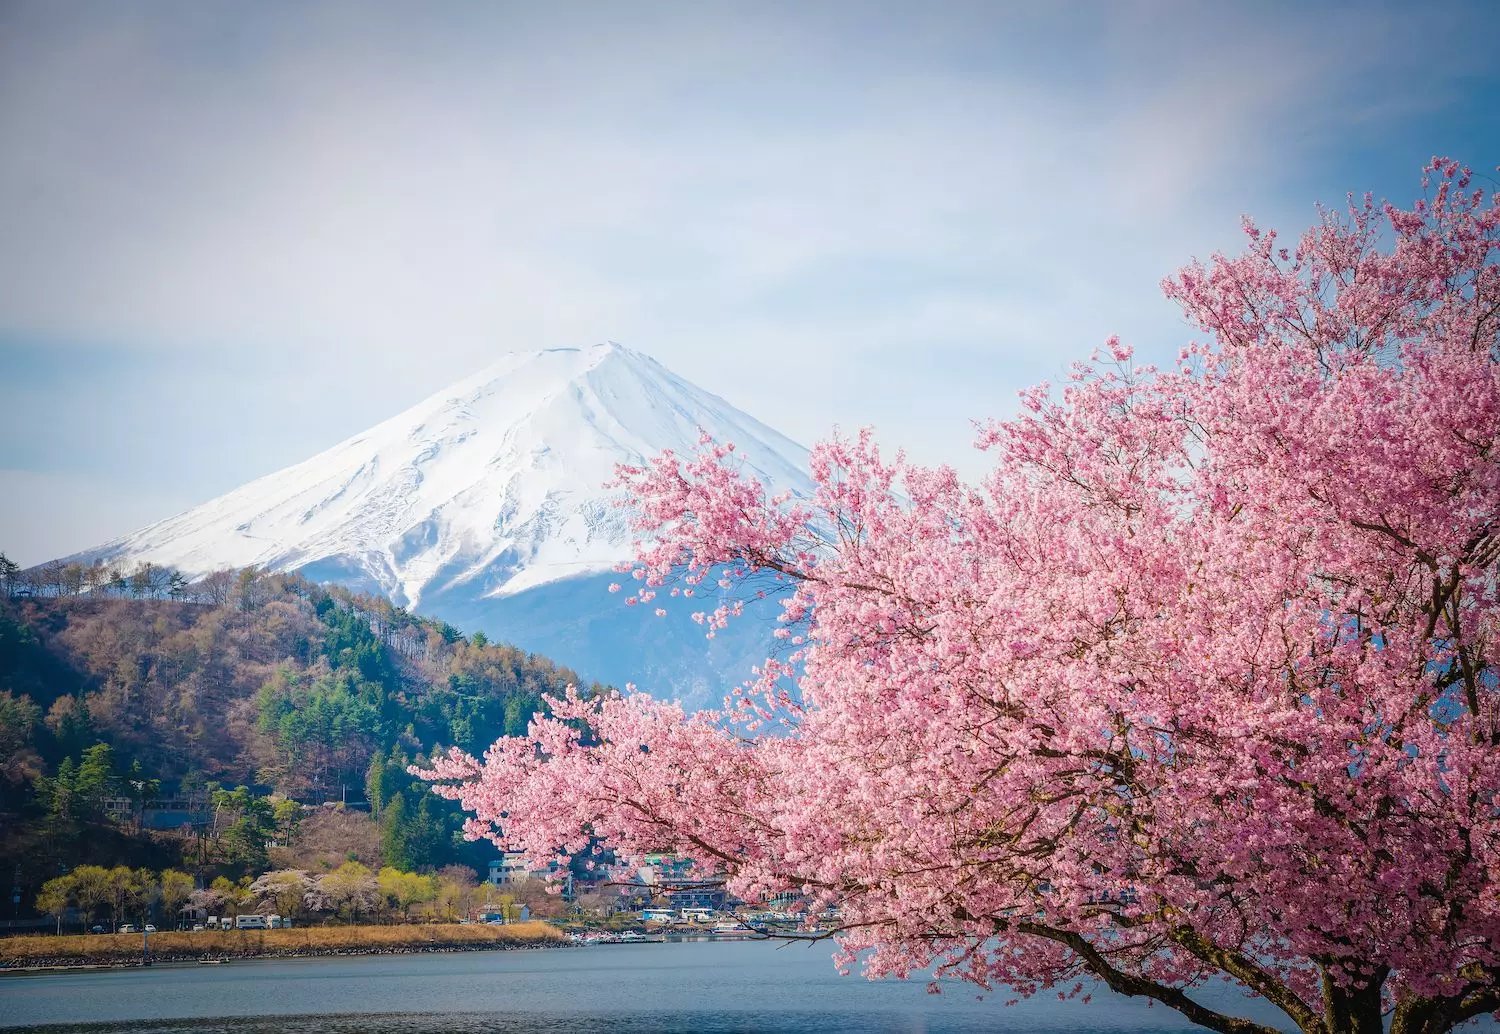 Climbing Fuji-san | No1 Mountain in Japan